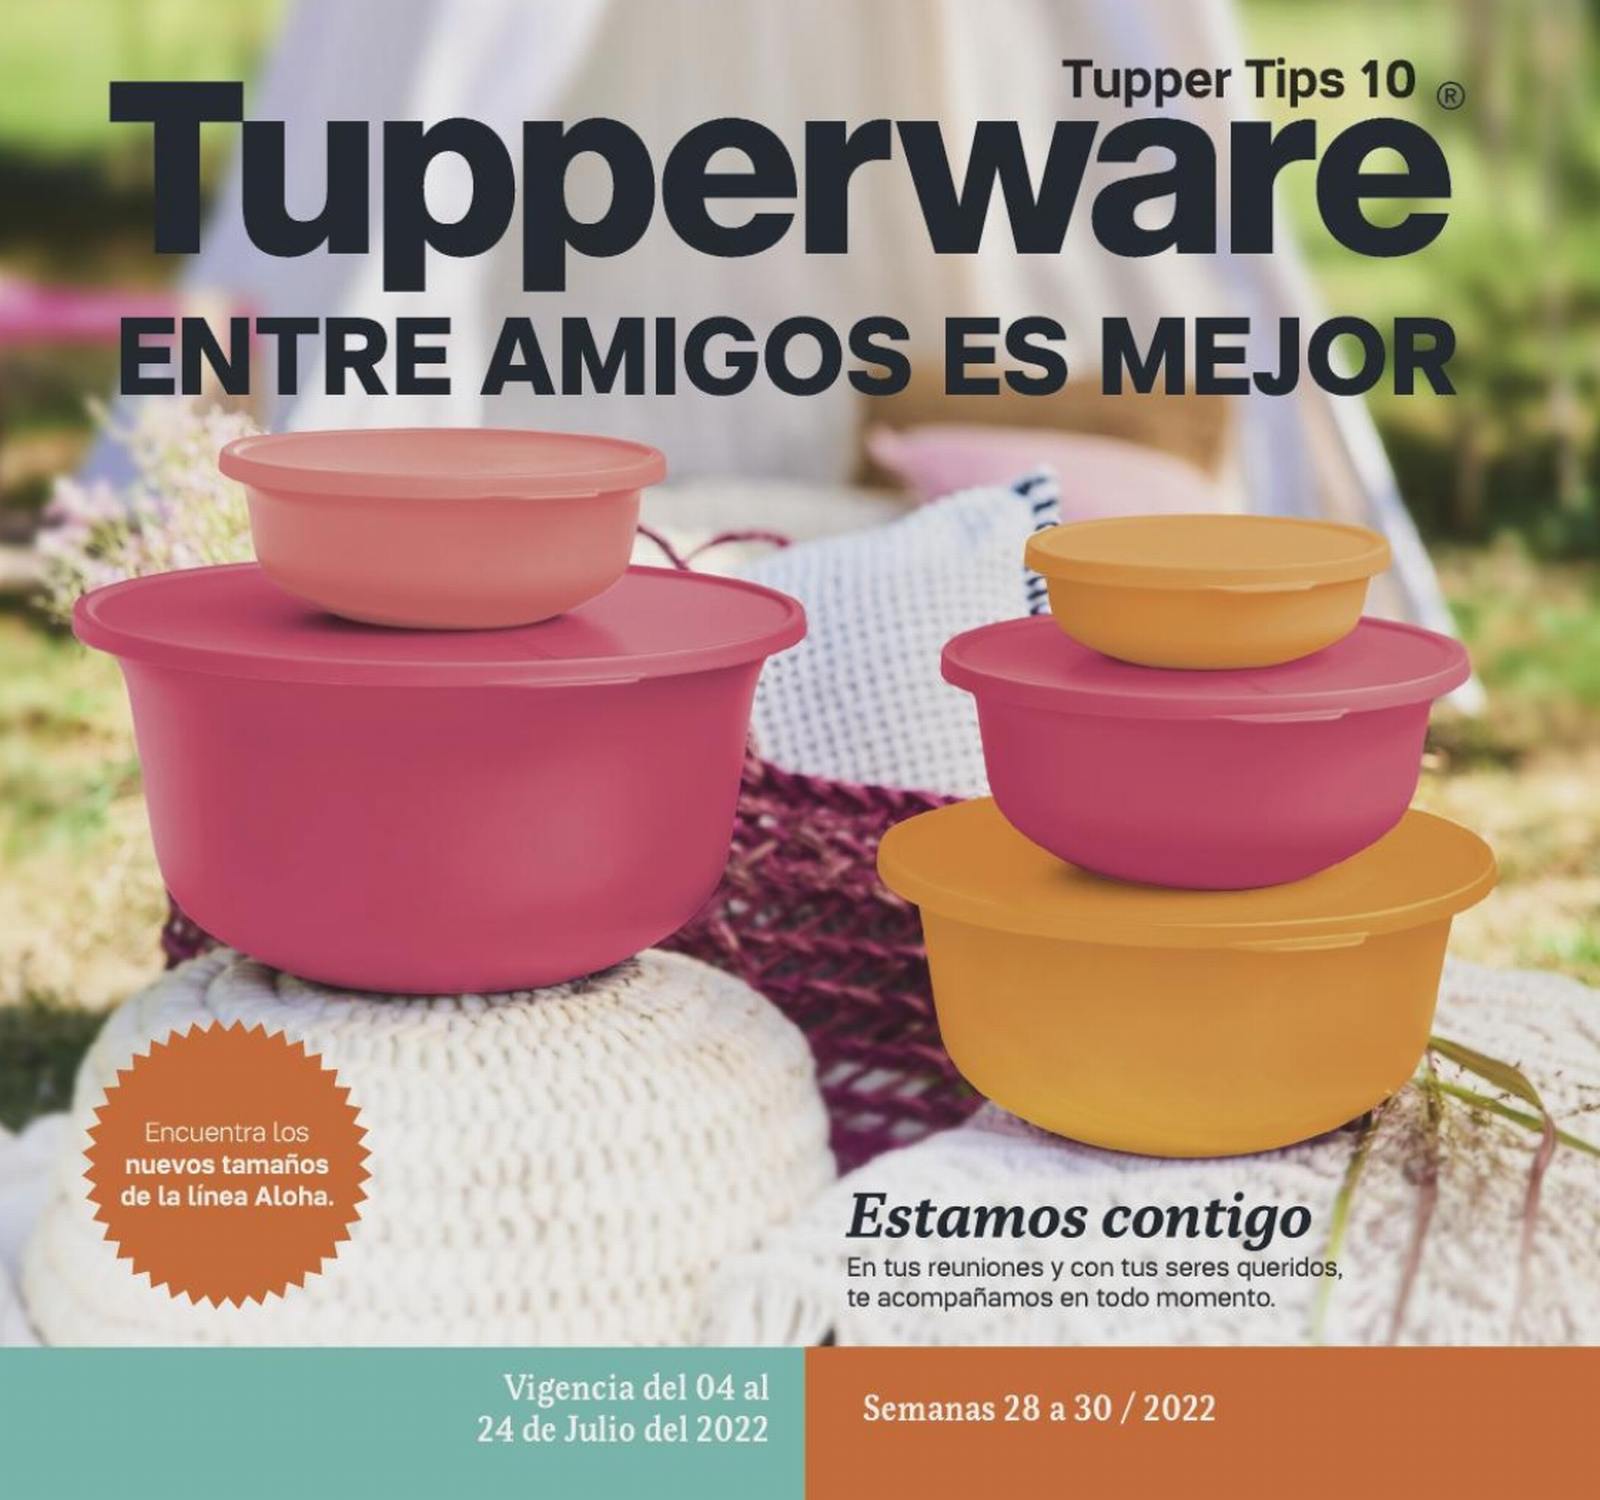 Catálogo Tupperware Tupper Tips 10 2022 México